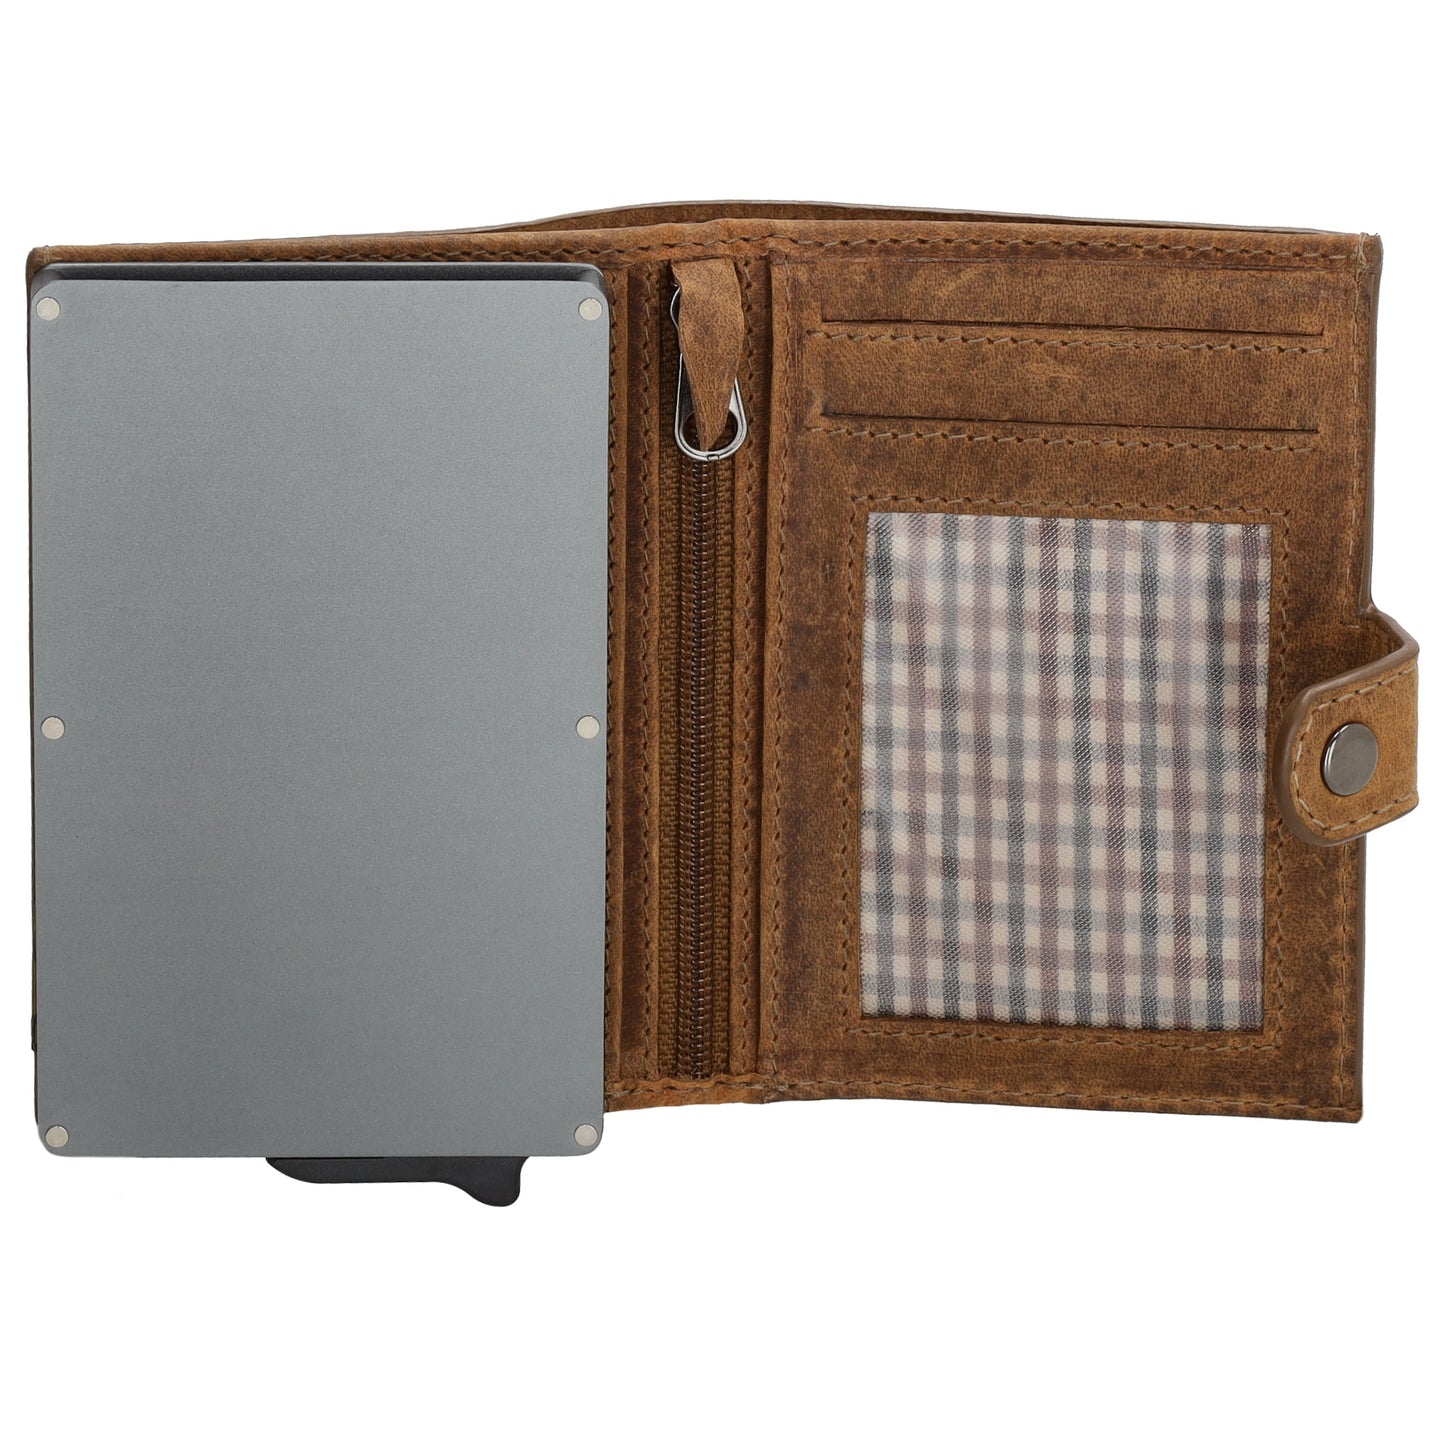 Kartenetui| Safty Wallet 10,5 x2 x 7,5cm in Braun und RFID-Schutz